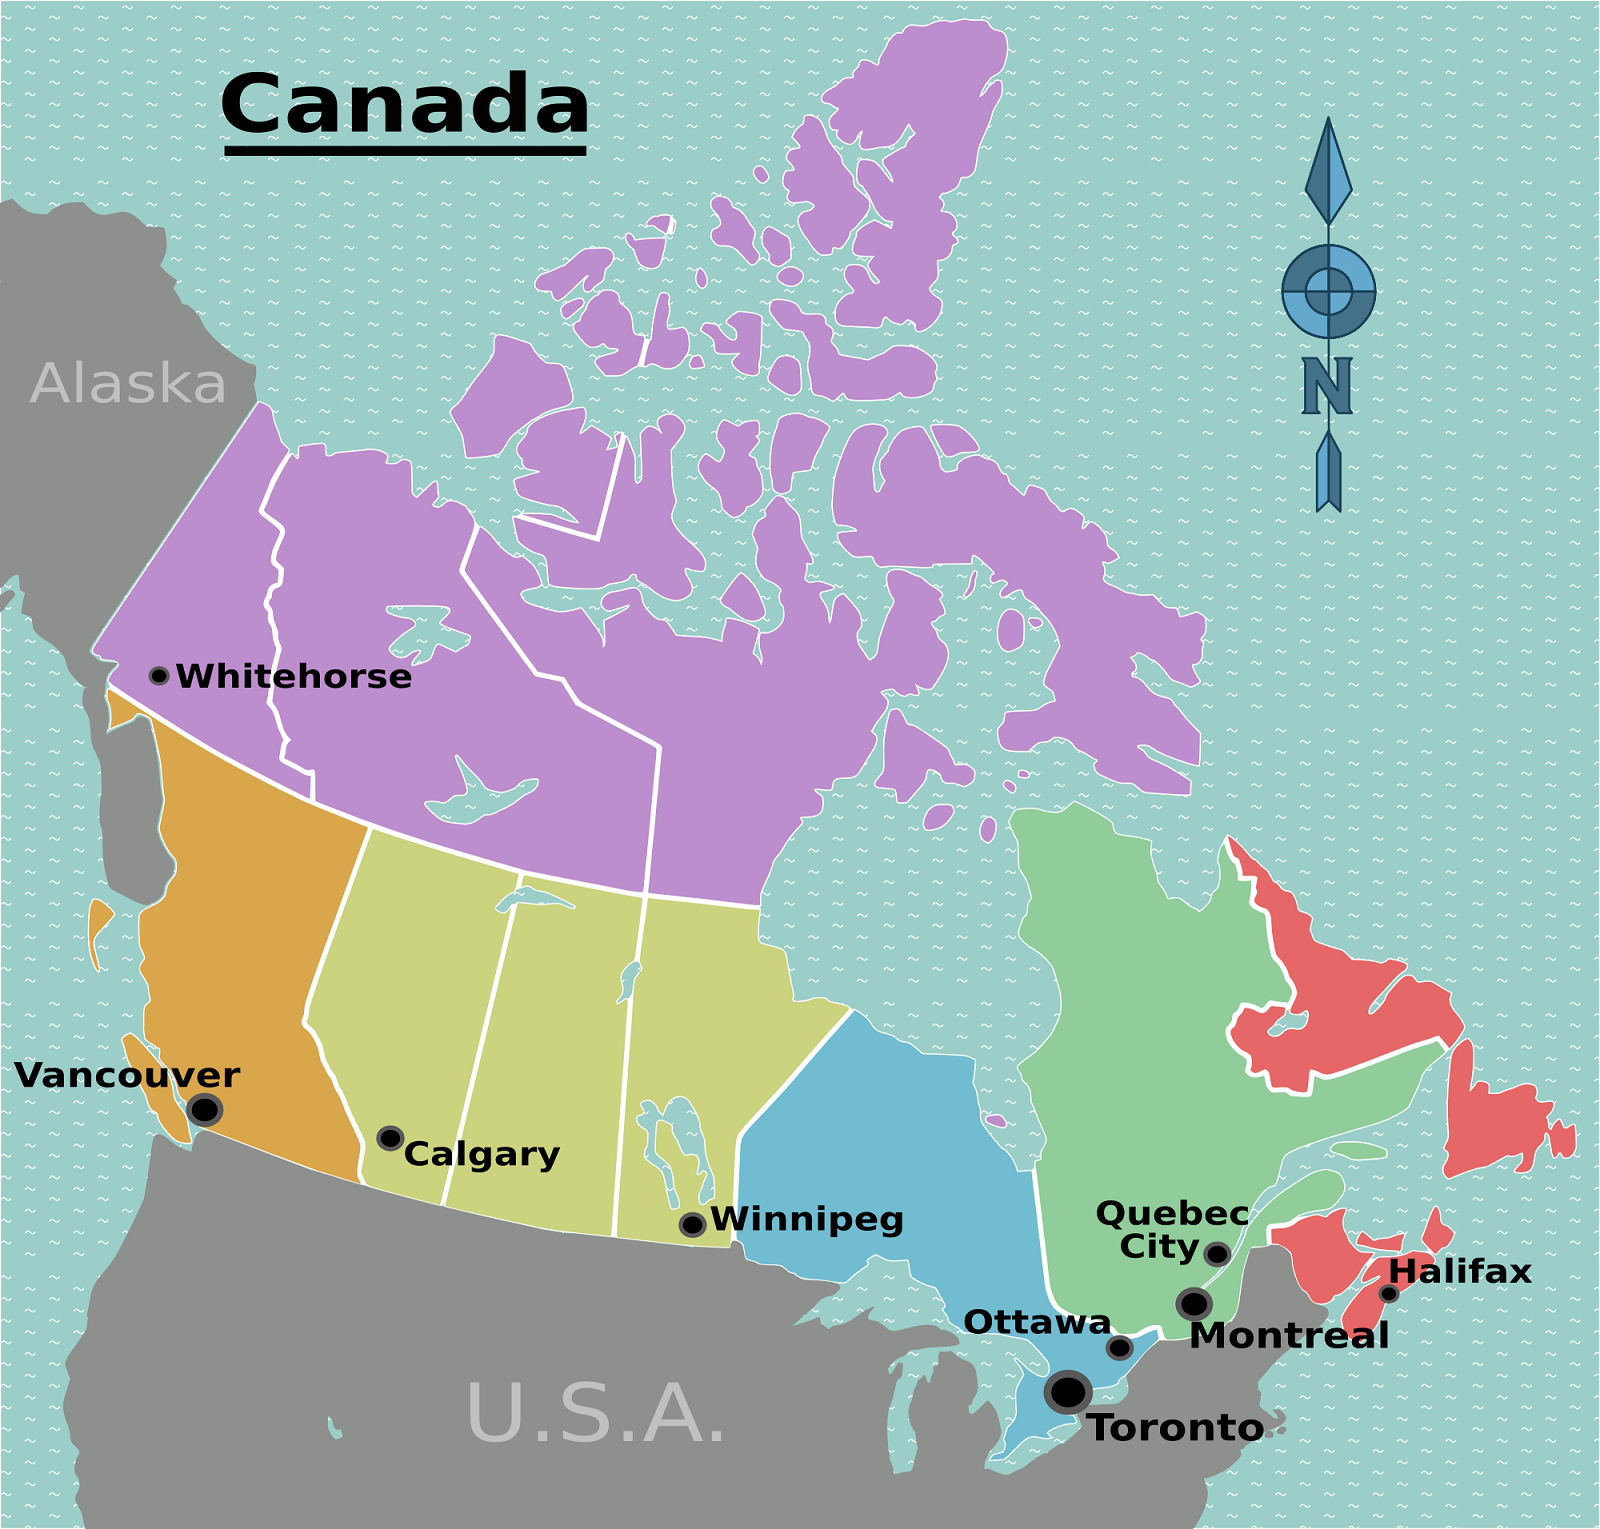 Canada_regions_map